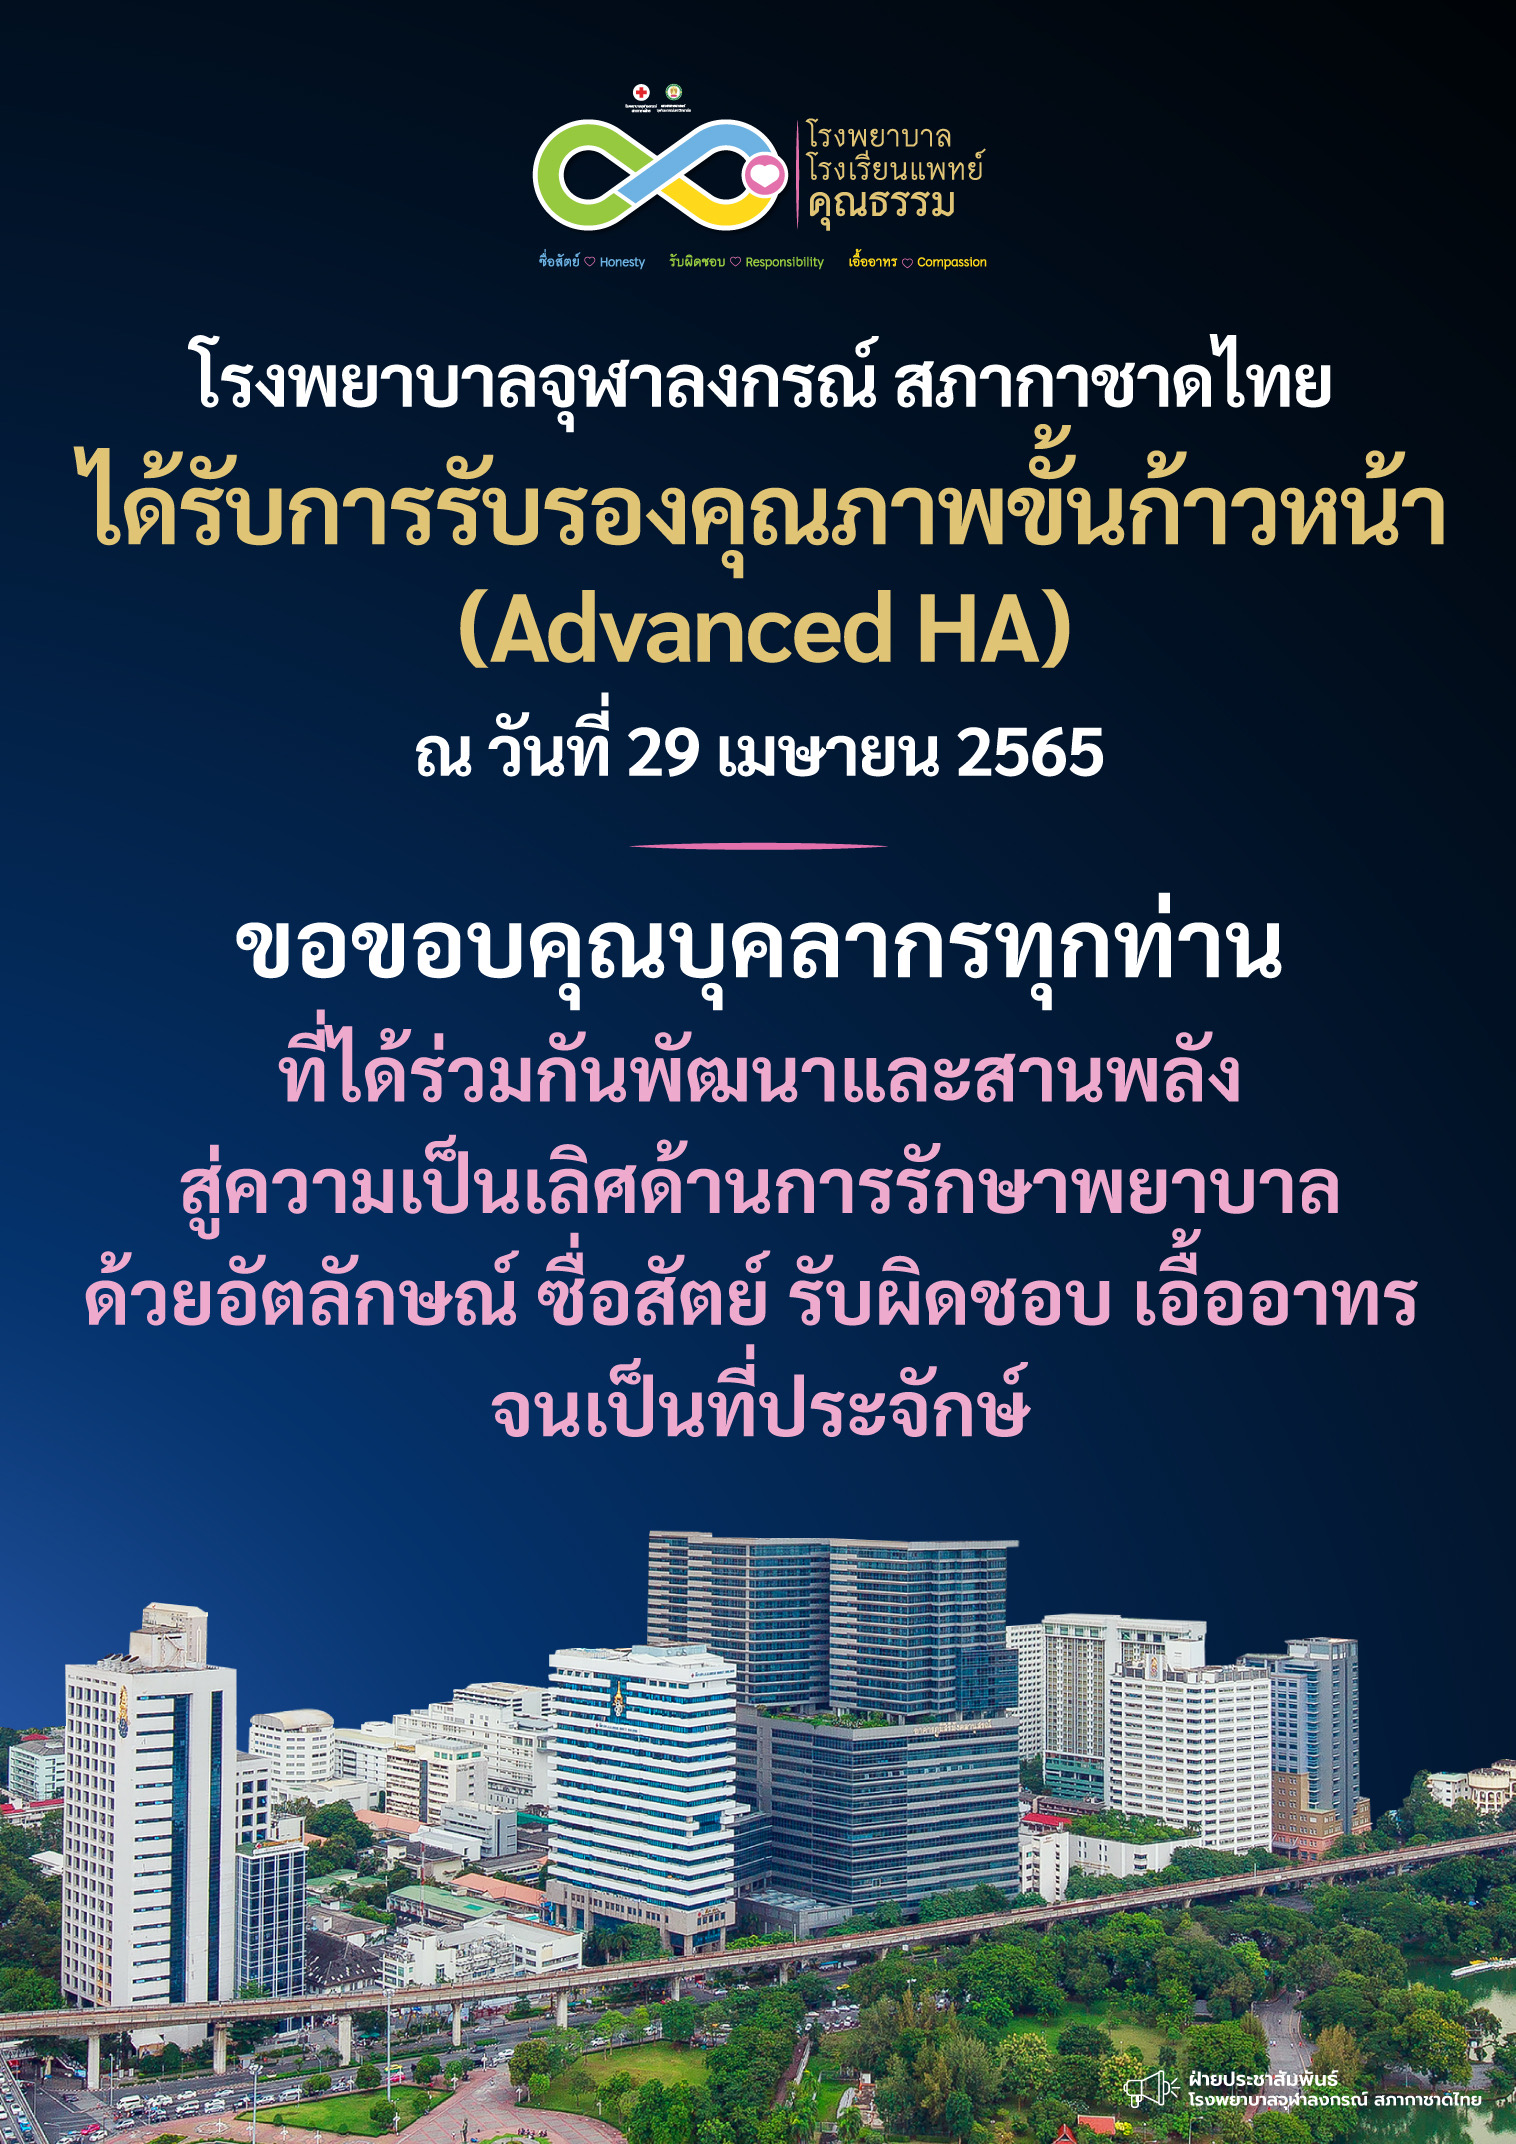 โรงพยาบาลจุฬาลงกรณ์ สภากาชาดไทย ได้รับการรับรองคุณภาพขั้นก้าวหน้า (Advanced HA)